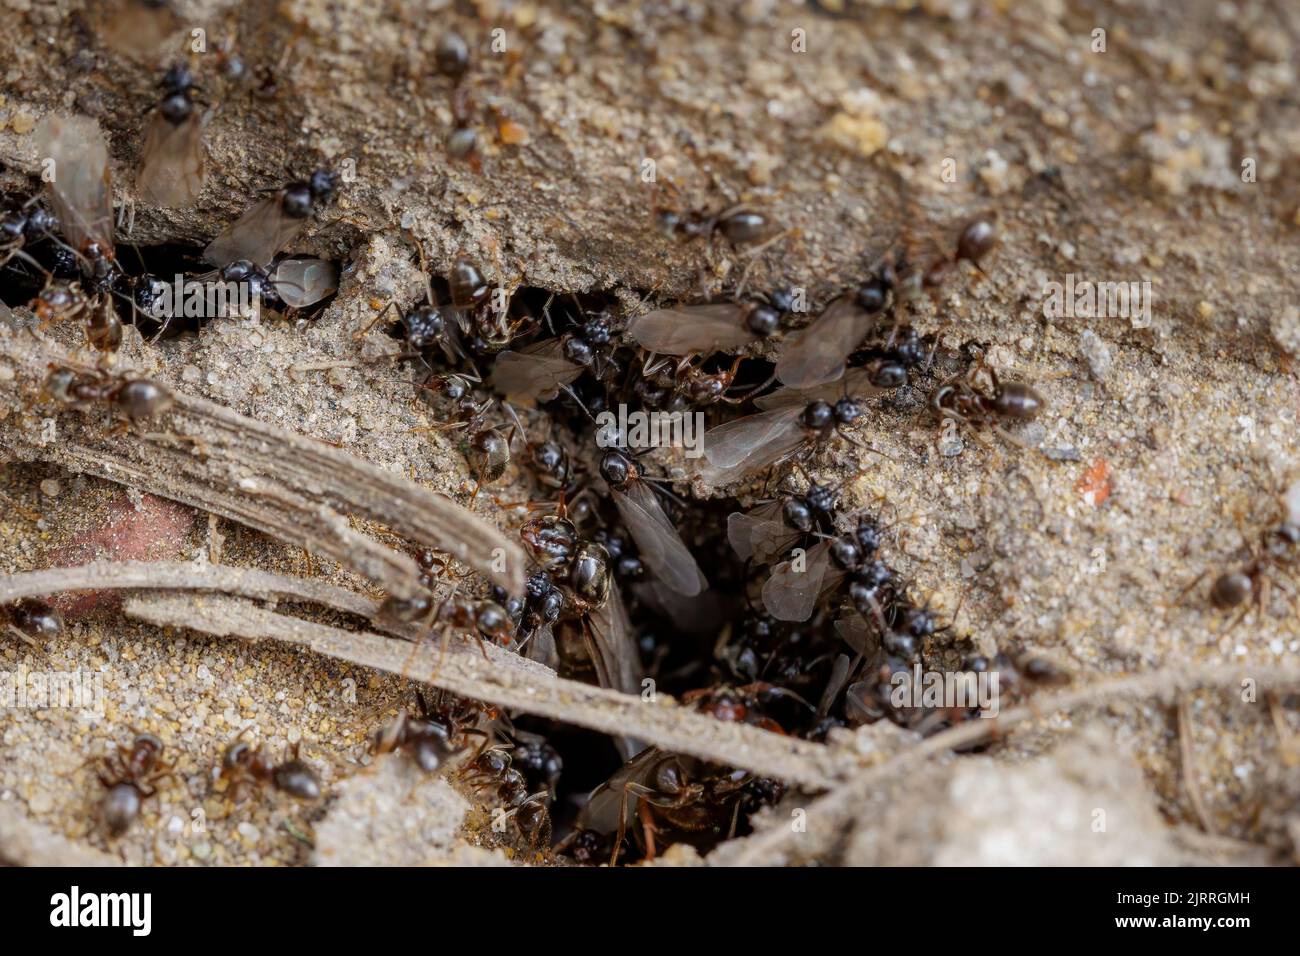 Hormigas voladoras, lasius niger, nido - macro disparo Foto de stock